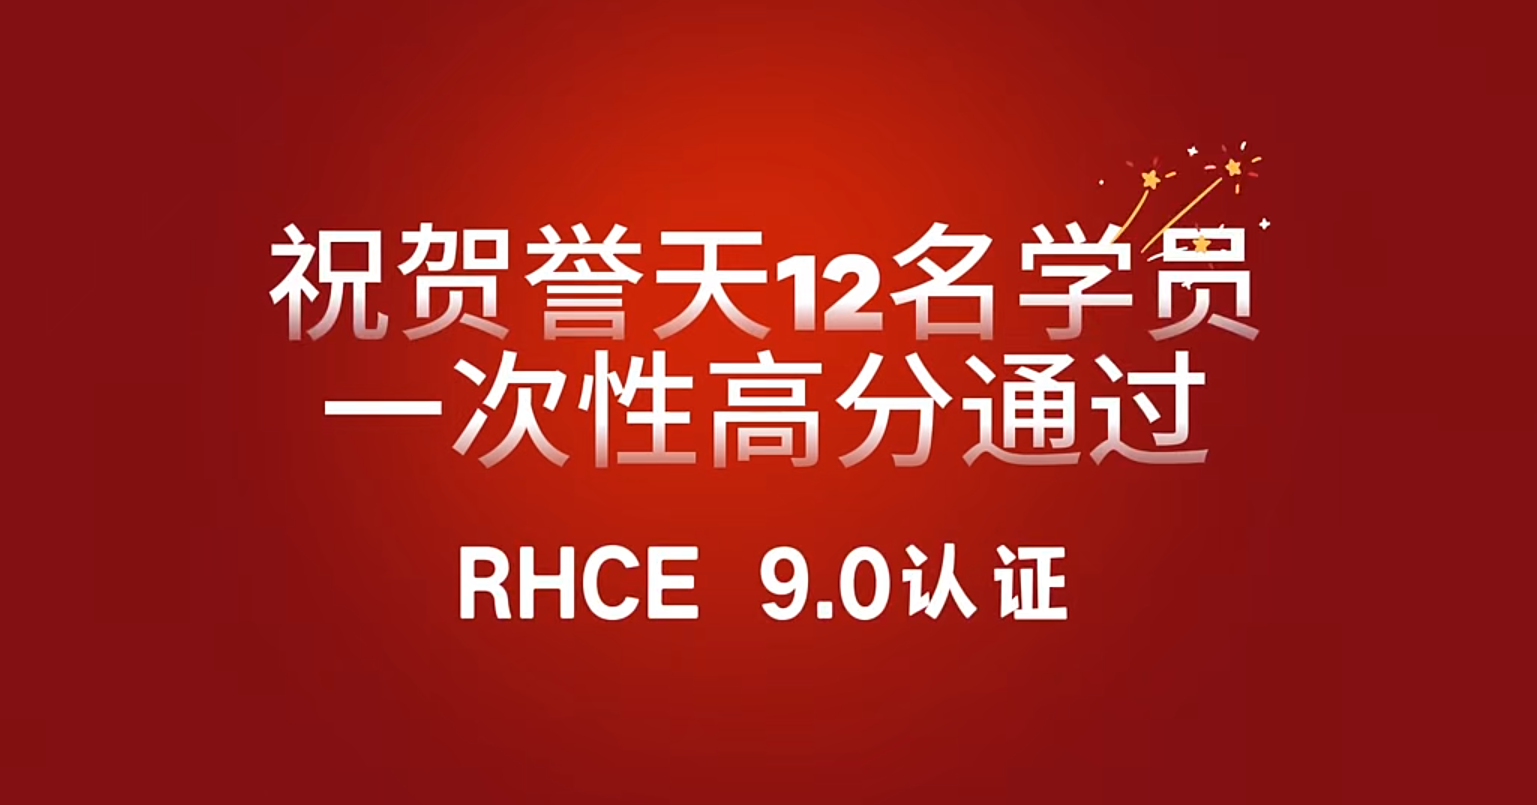 誉天教育-rhce 9.0战报.png